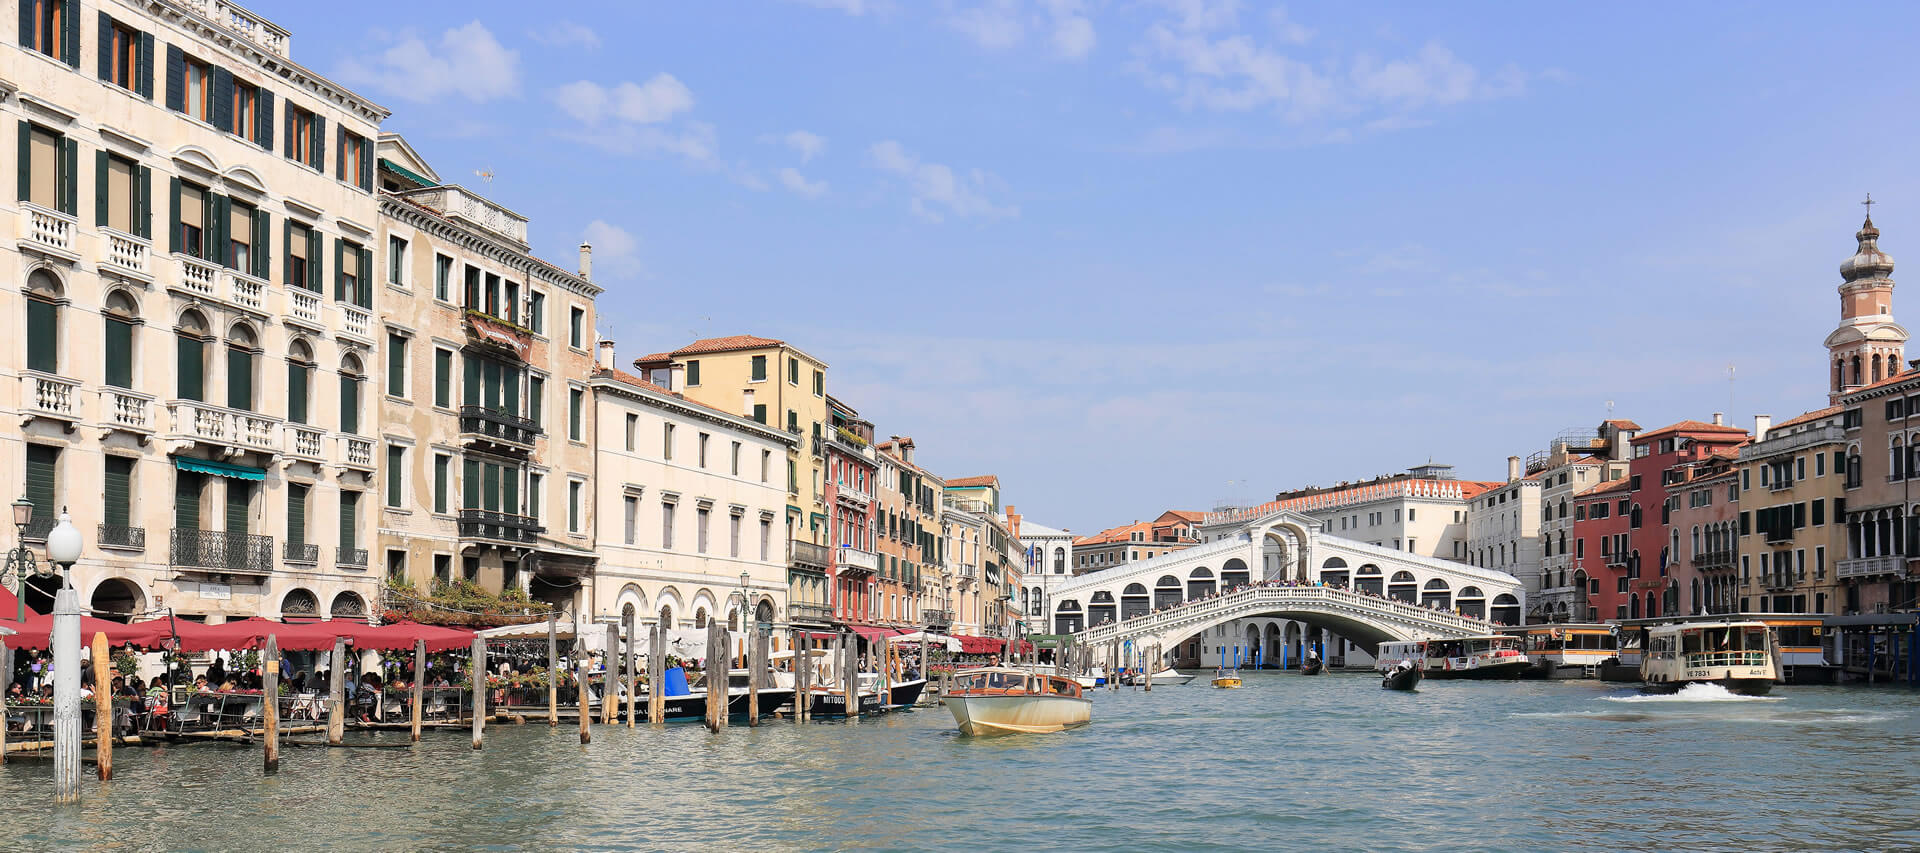 Venice in autumn, with the Rialto Bridge